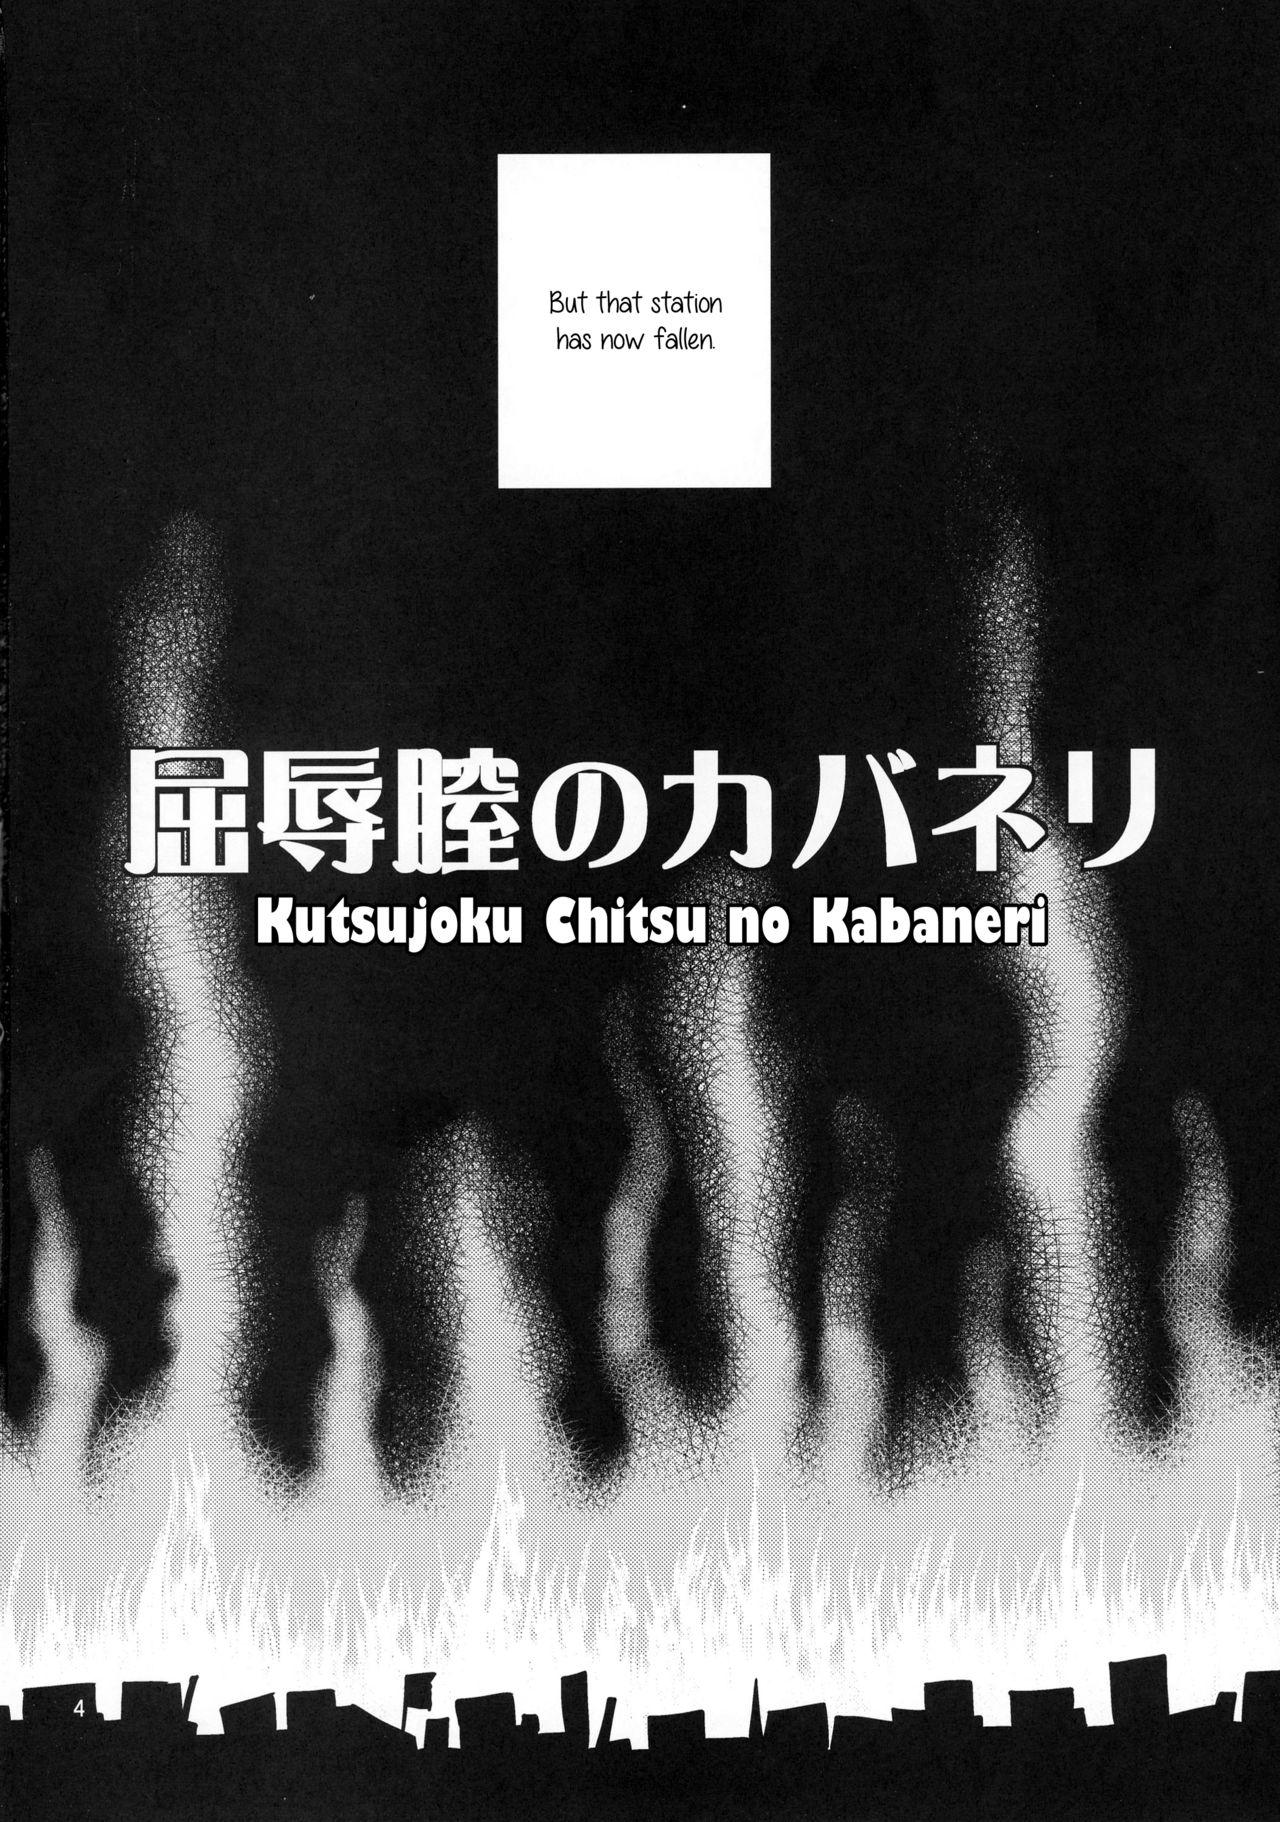 Celebrity Kutsujoku Chitsu no Kabaneri - Koutetsujou no kabaneri Free Fuck Clips - Page 4